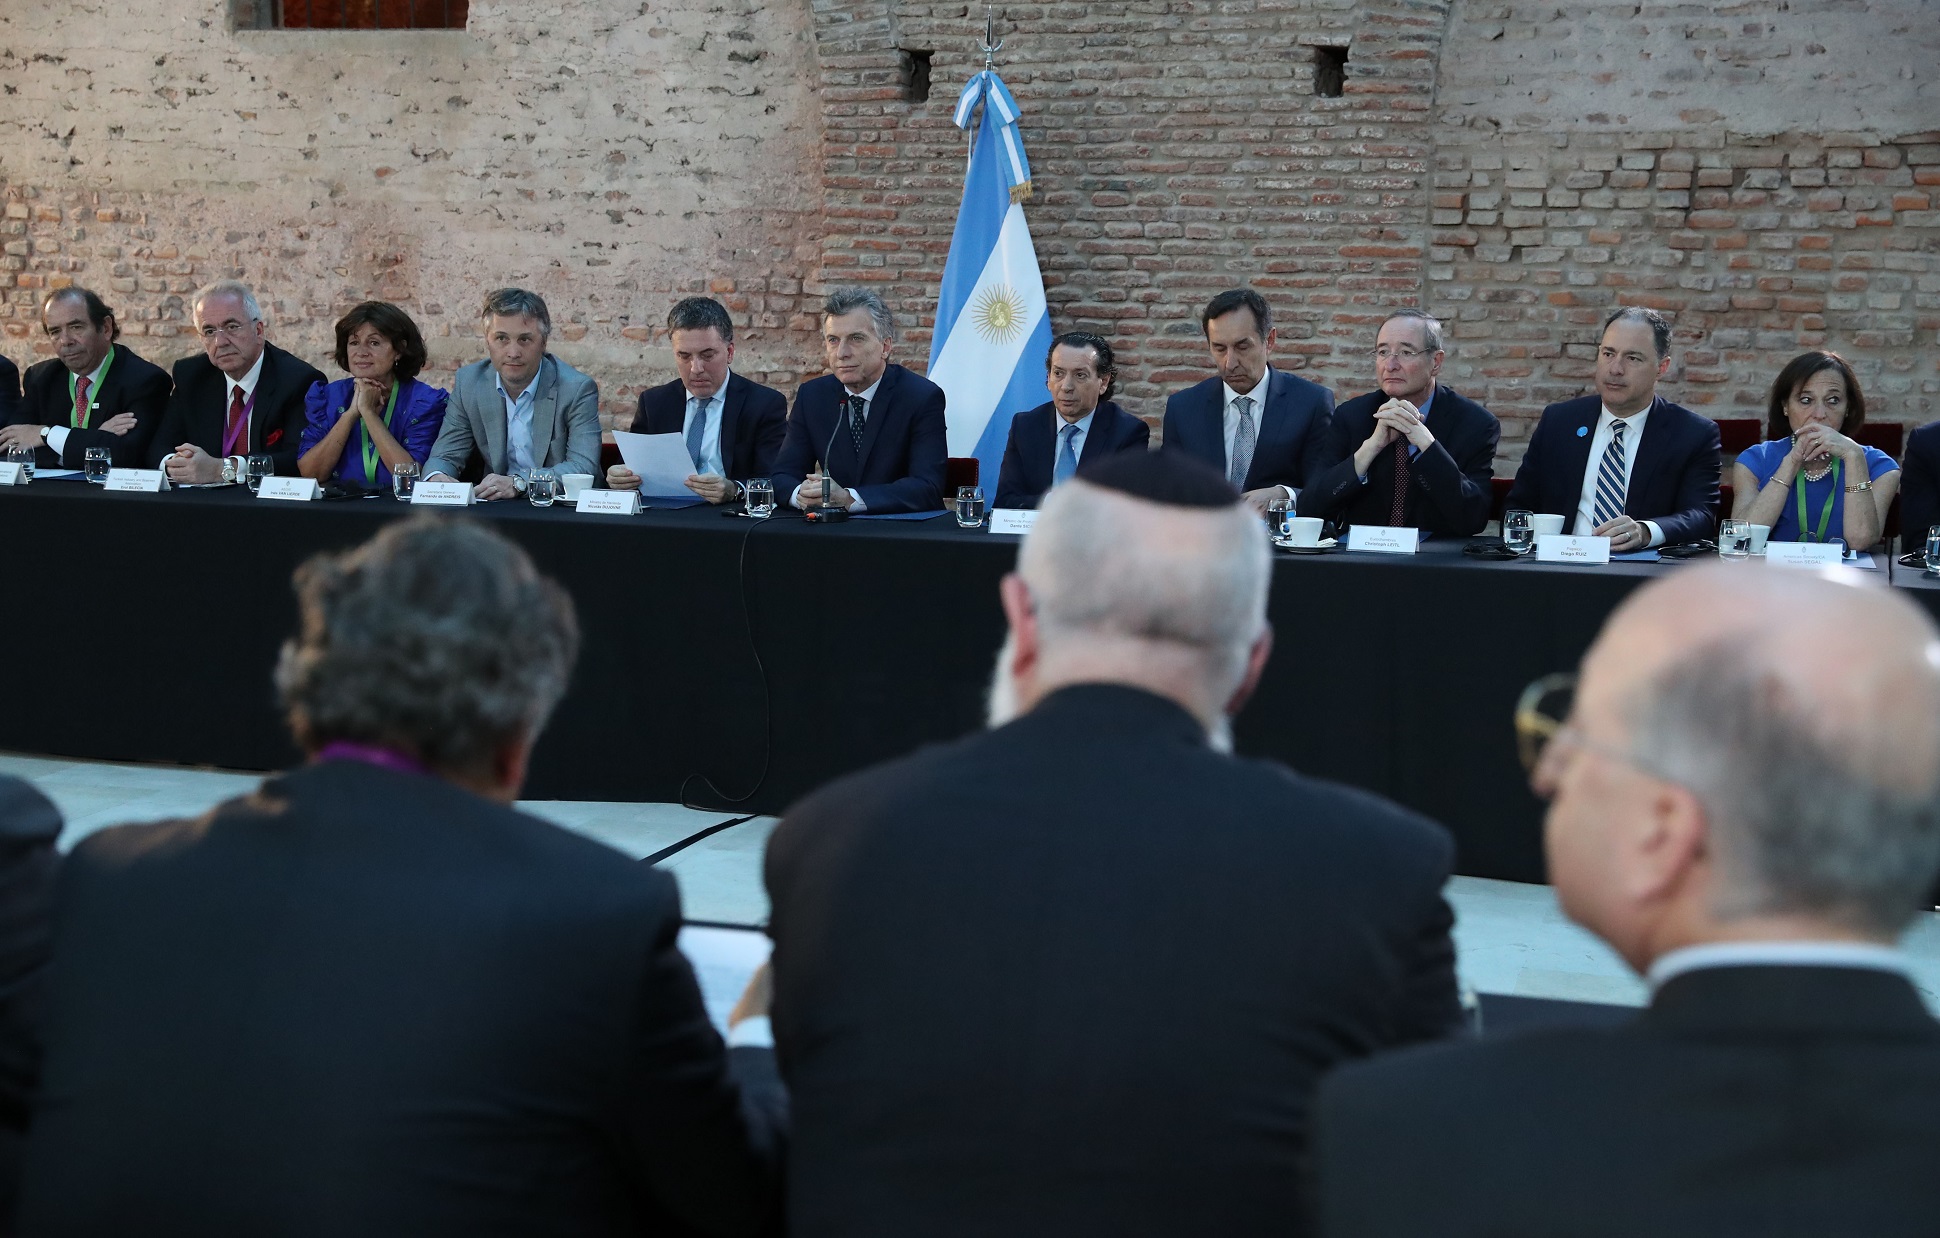 Macri: Las reglas claras y la transparencia crean el entorno adecuado para el desarrollo y la inversión